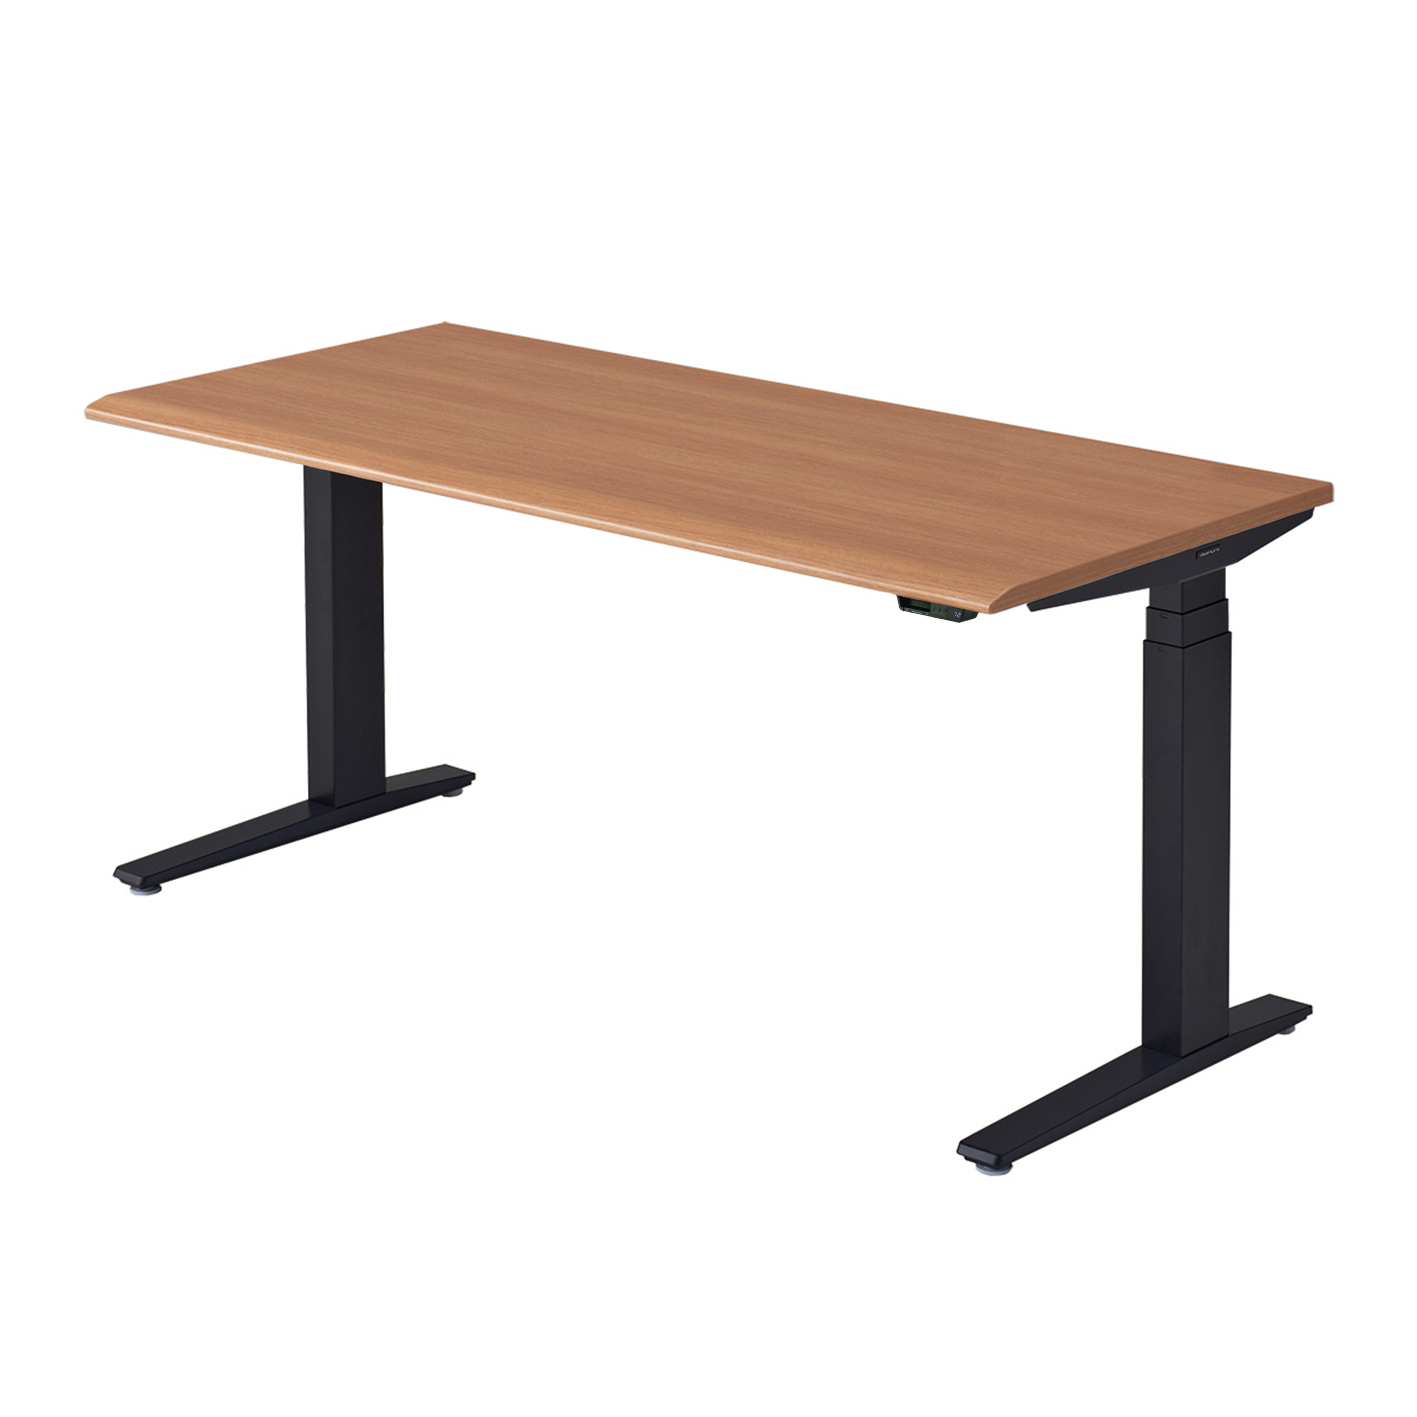 Okamura height adjustable table in medium wood